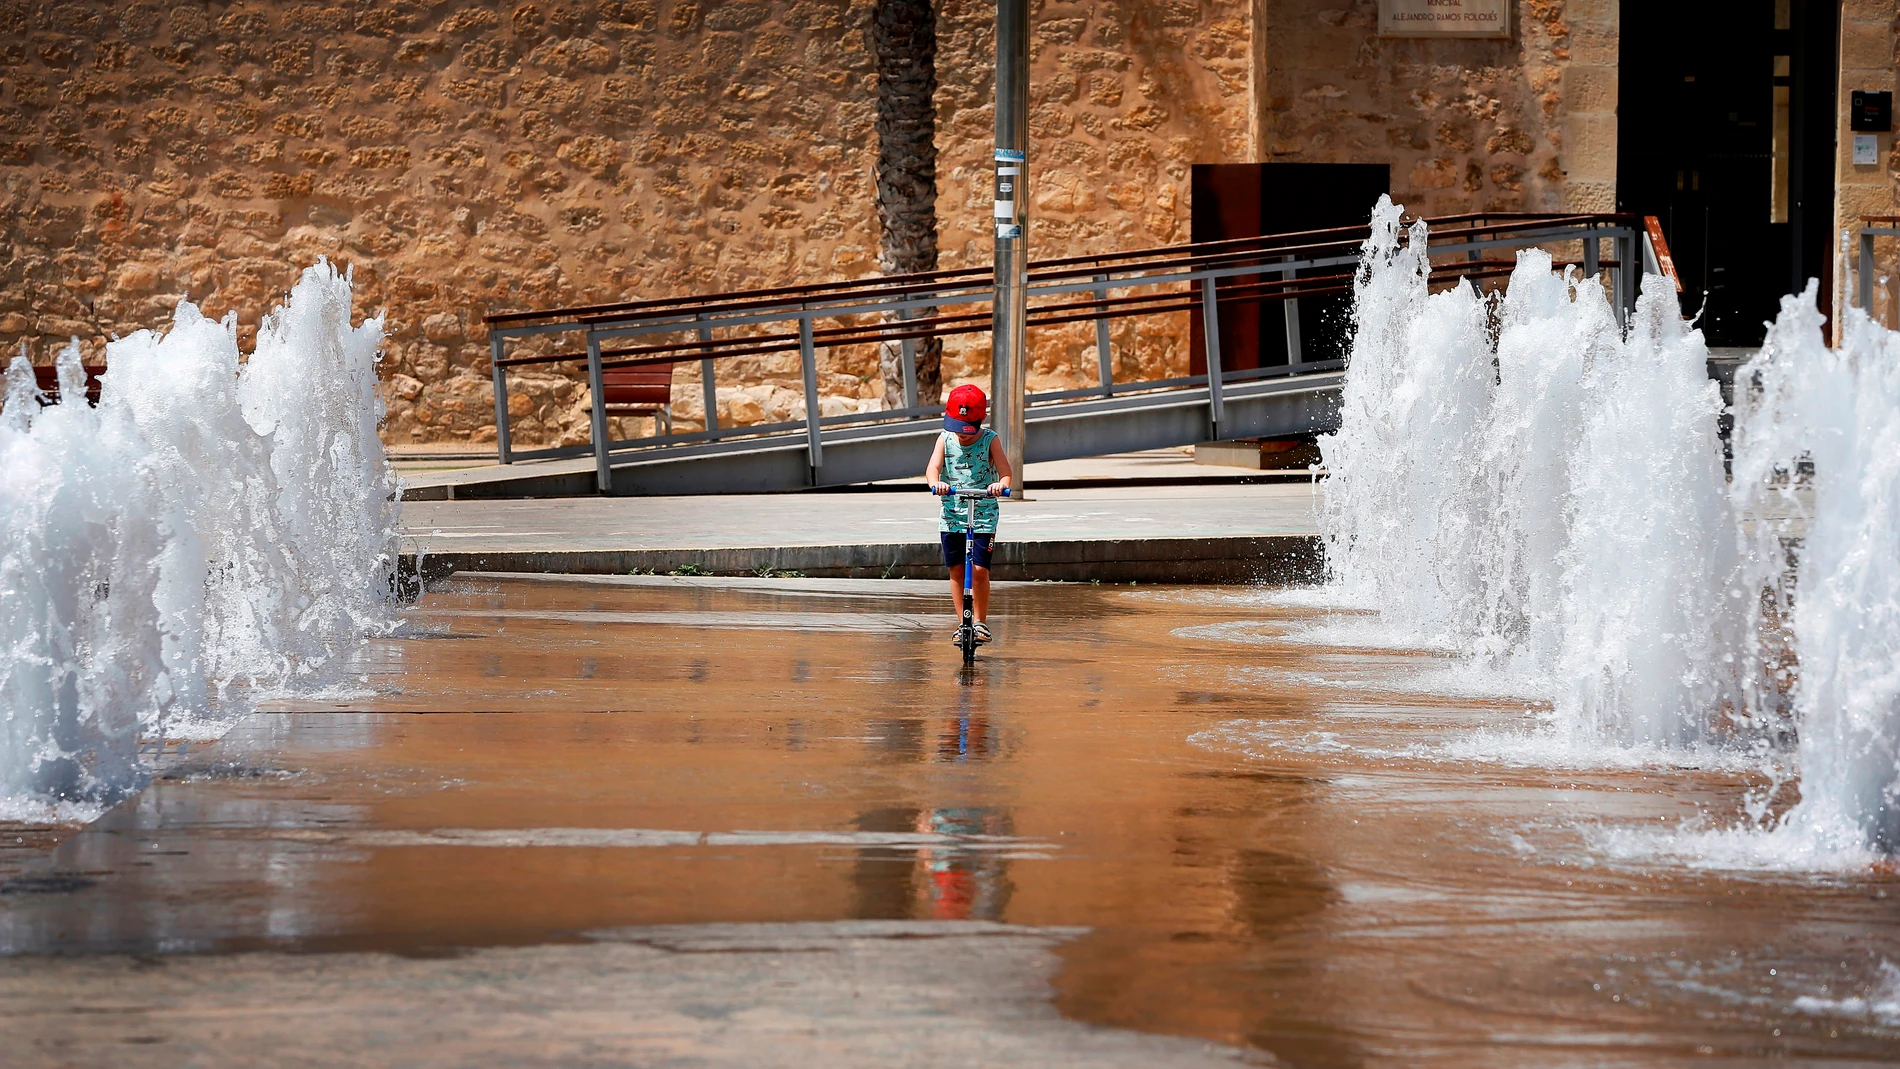 Un niño patina entre chorros de agua en una fuente en Elche (Alicante) para mitigar las altas temperaturas debido a la ola de calor que azota la península